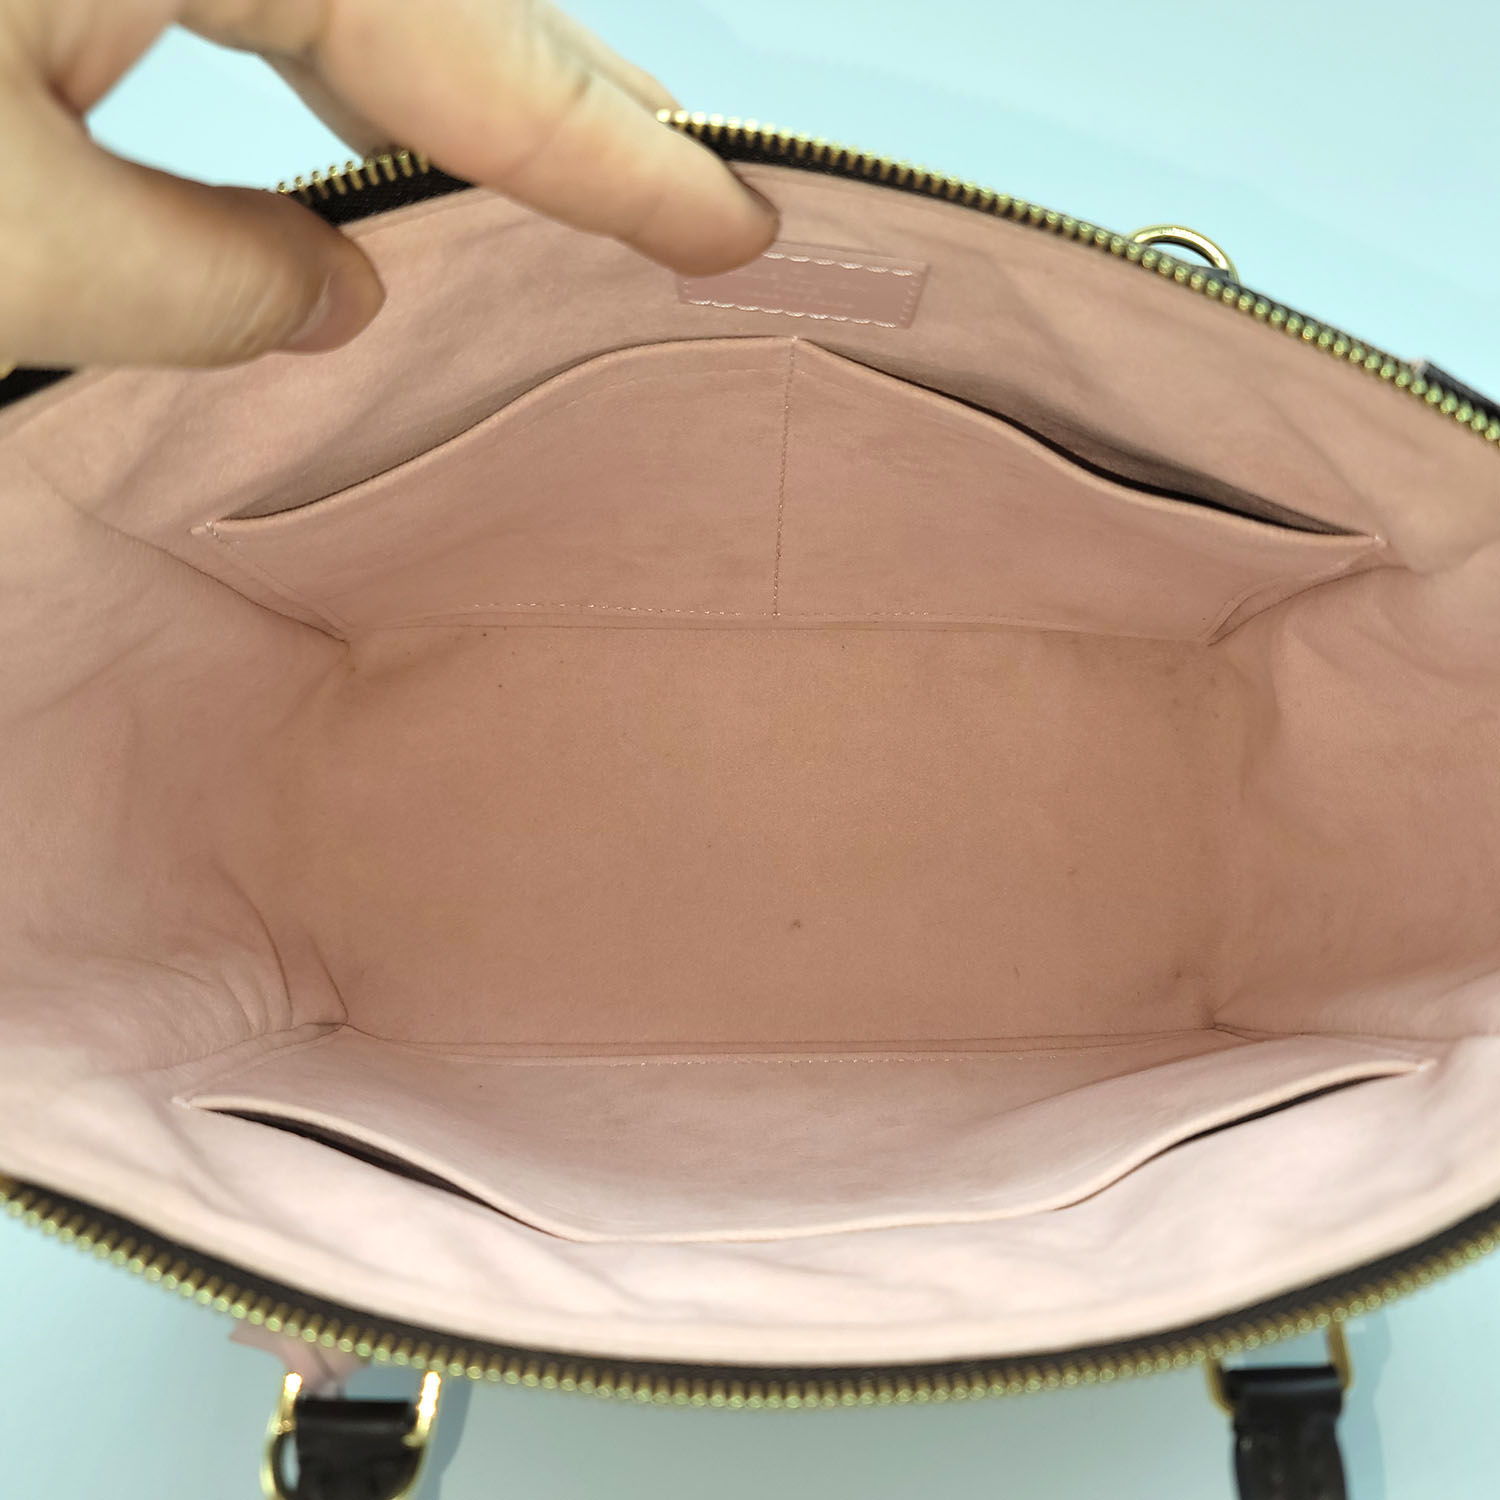 Louis Vuitton Caissa PM Damier Rose Ballerine Canvas Leather Shoulder Bag CBLRORSA 144010019269